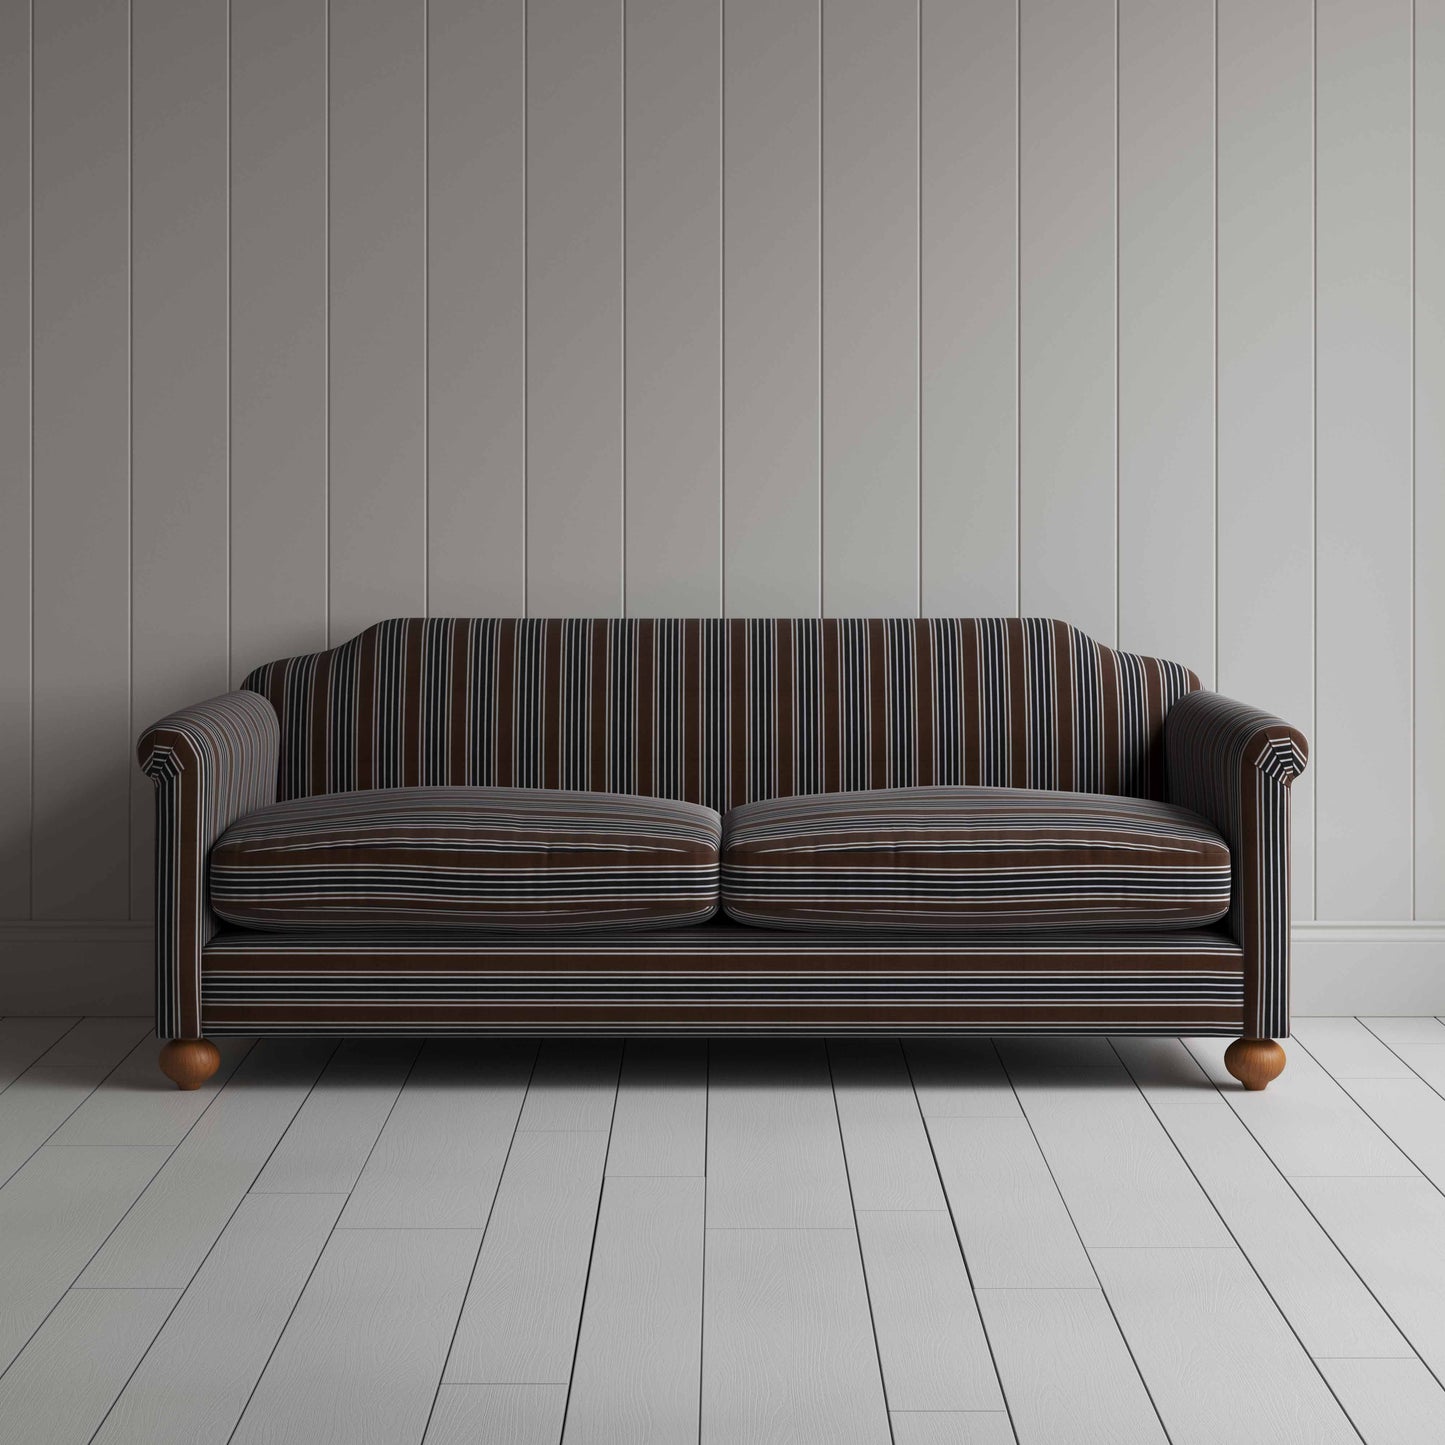 Dolittle 4 Seater Sofa in Regatta Cotton, Charcoal